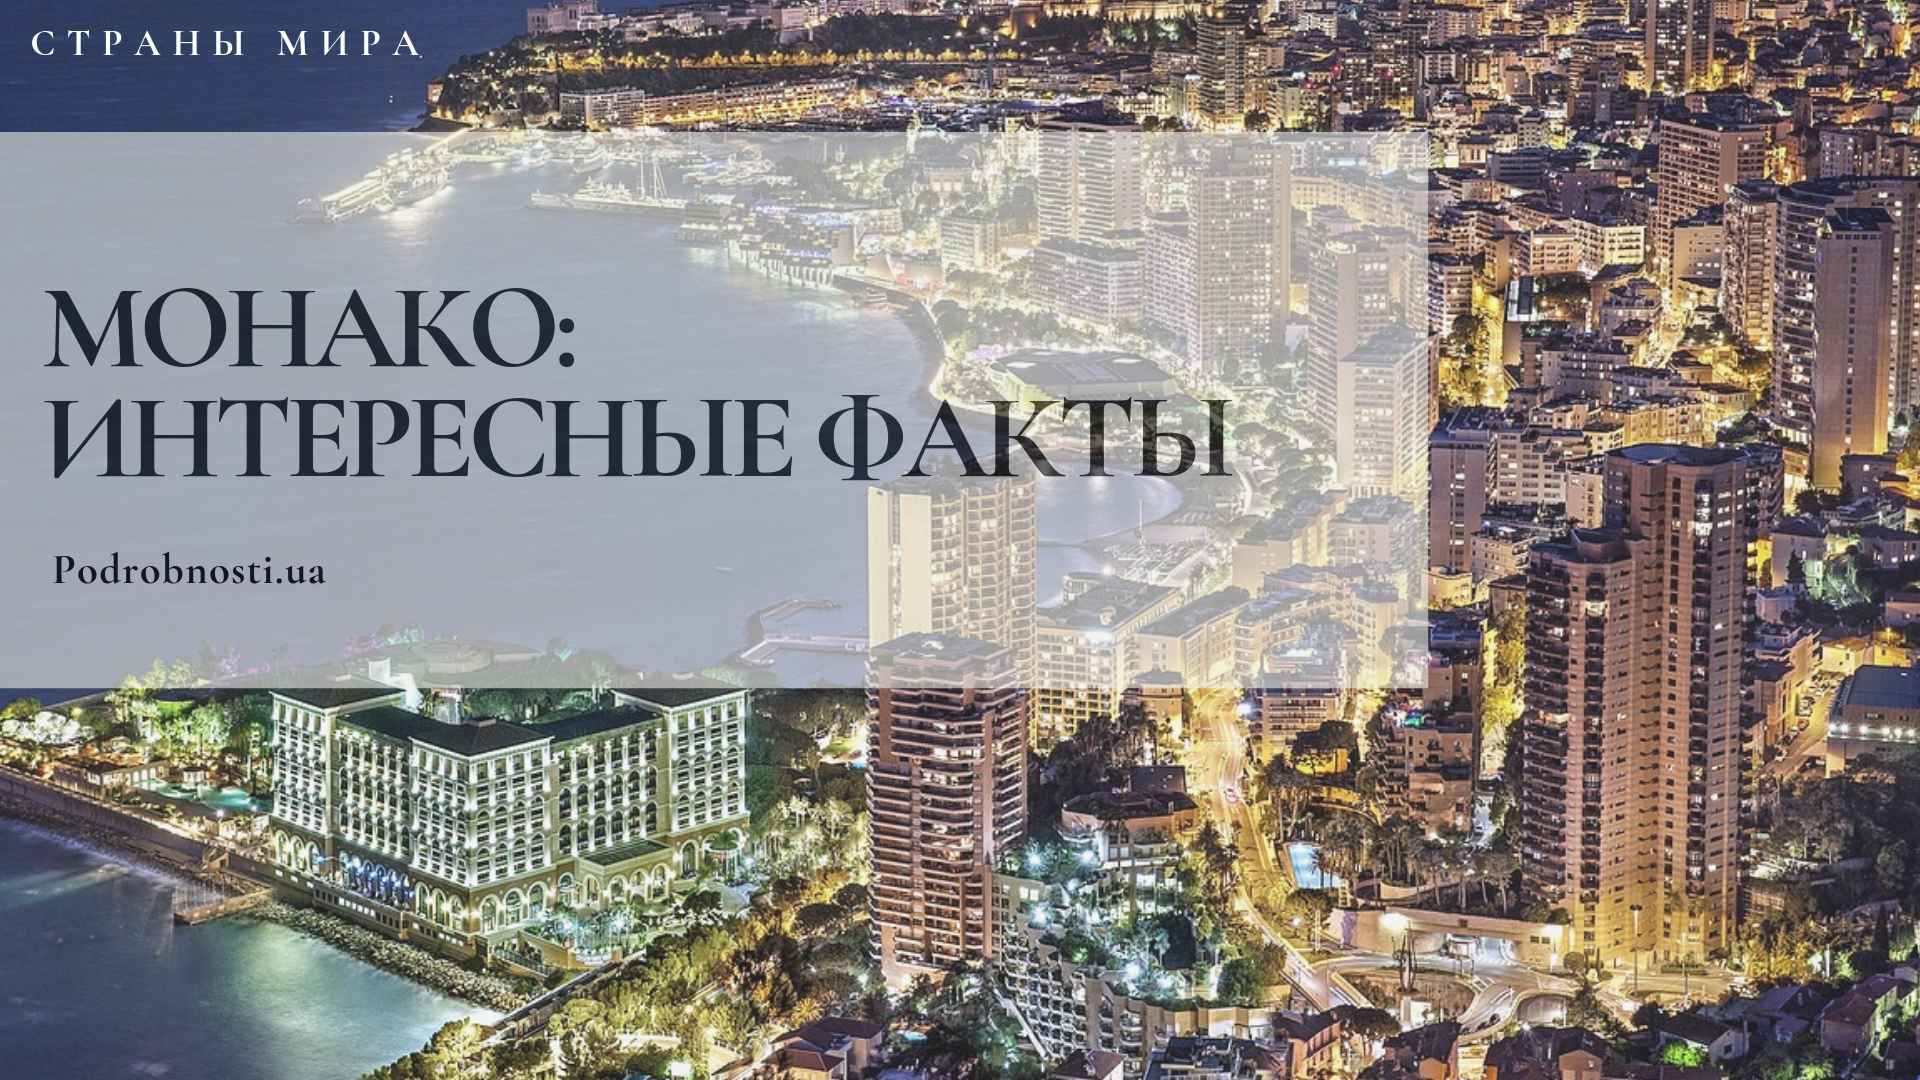 Интересные факты про монако купить жилье в россии дешево